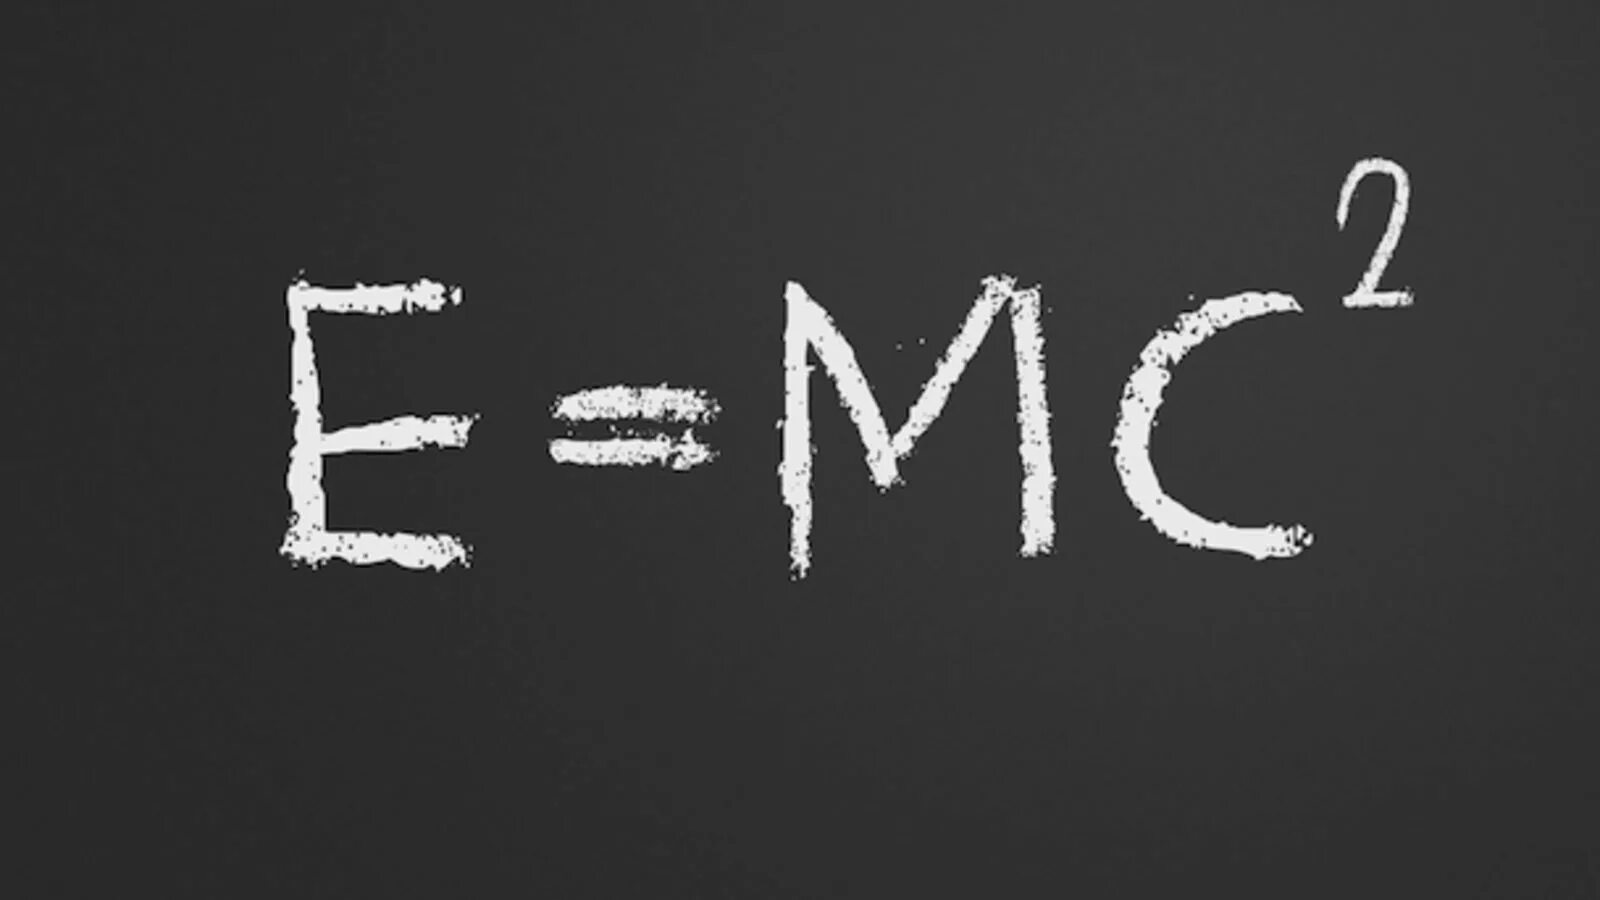 Е равно мс. Эйнштейна е мс2. Е мс2 формула Эйнштейна. Е мс2 теория относительности. Уравнение Эйнштейна e mc2.